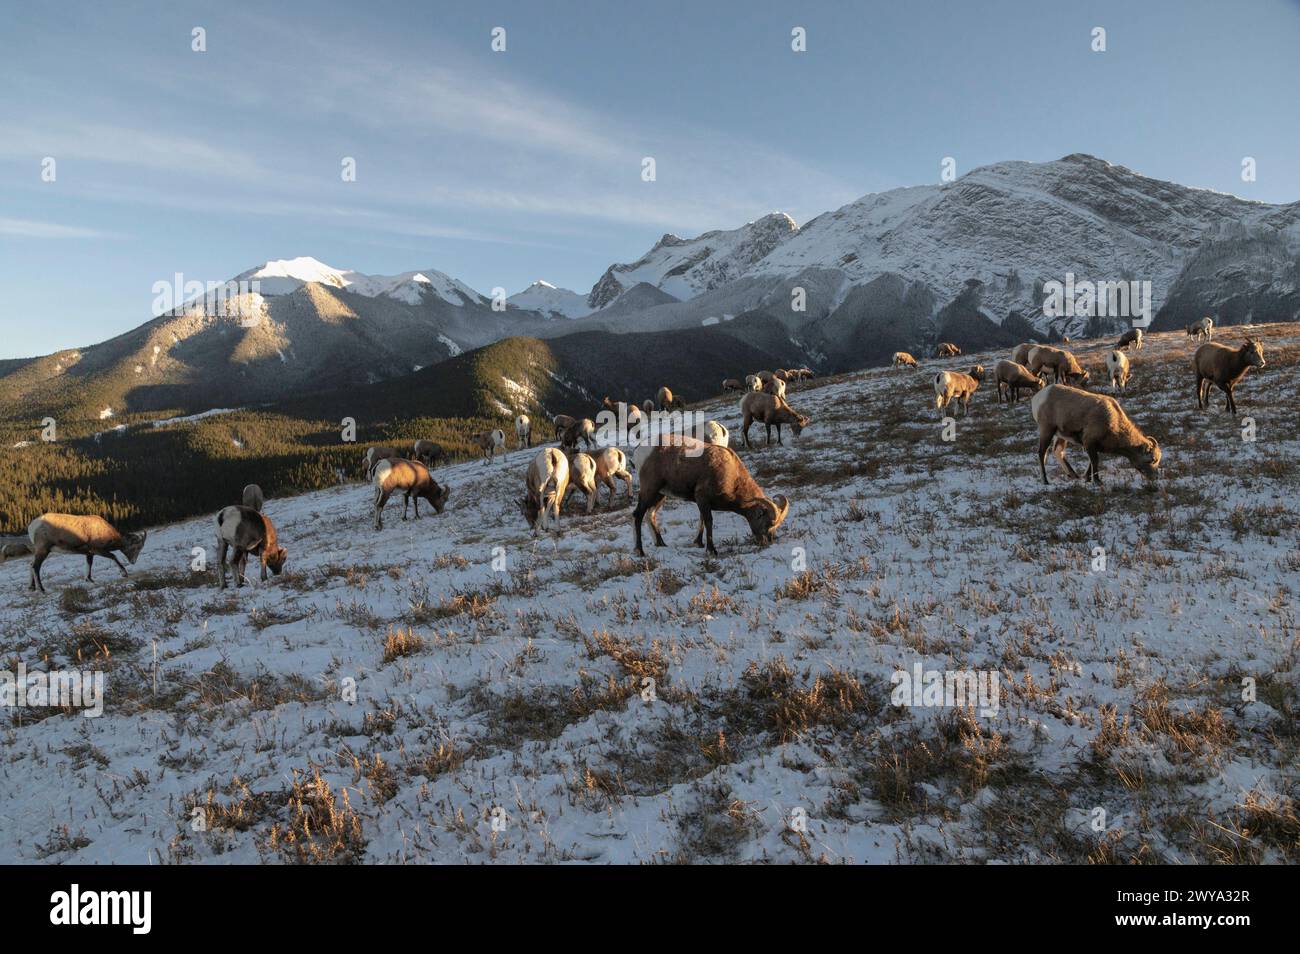 Ovis canadensis, mouton rocheux, sur une montagne hivernale, Parc national Jasper, site du patrimoine mondial de l'UNESCO, Alberta, Rocheuses canadiennes, Canada Banque D'Images